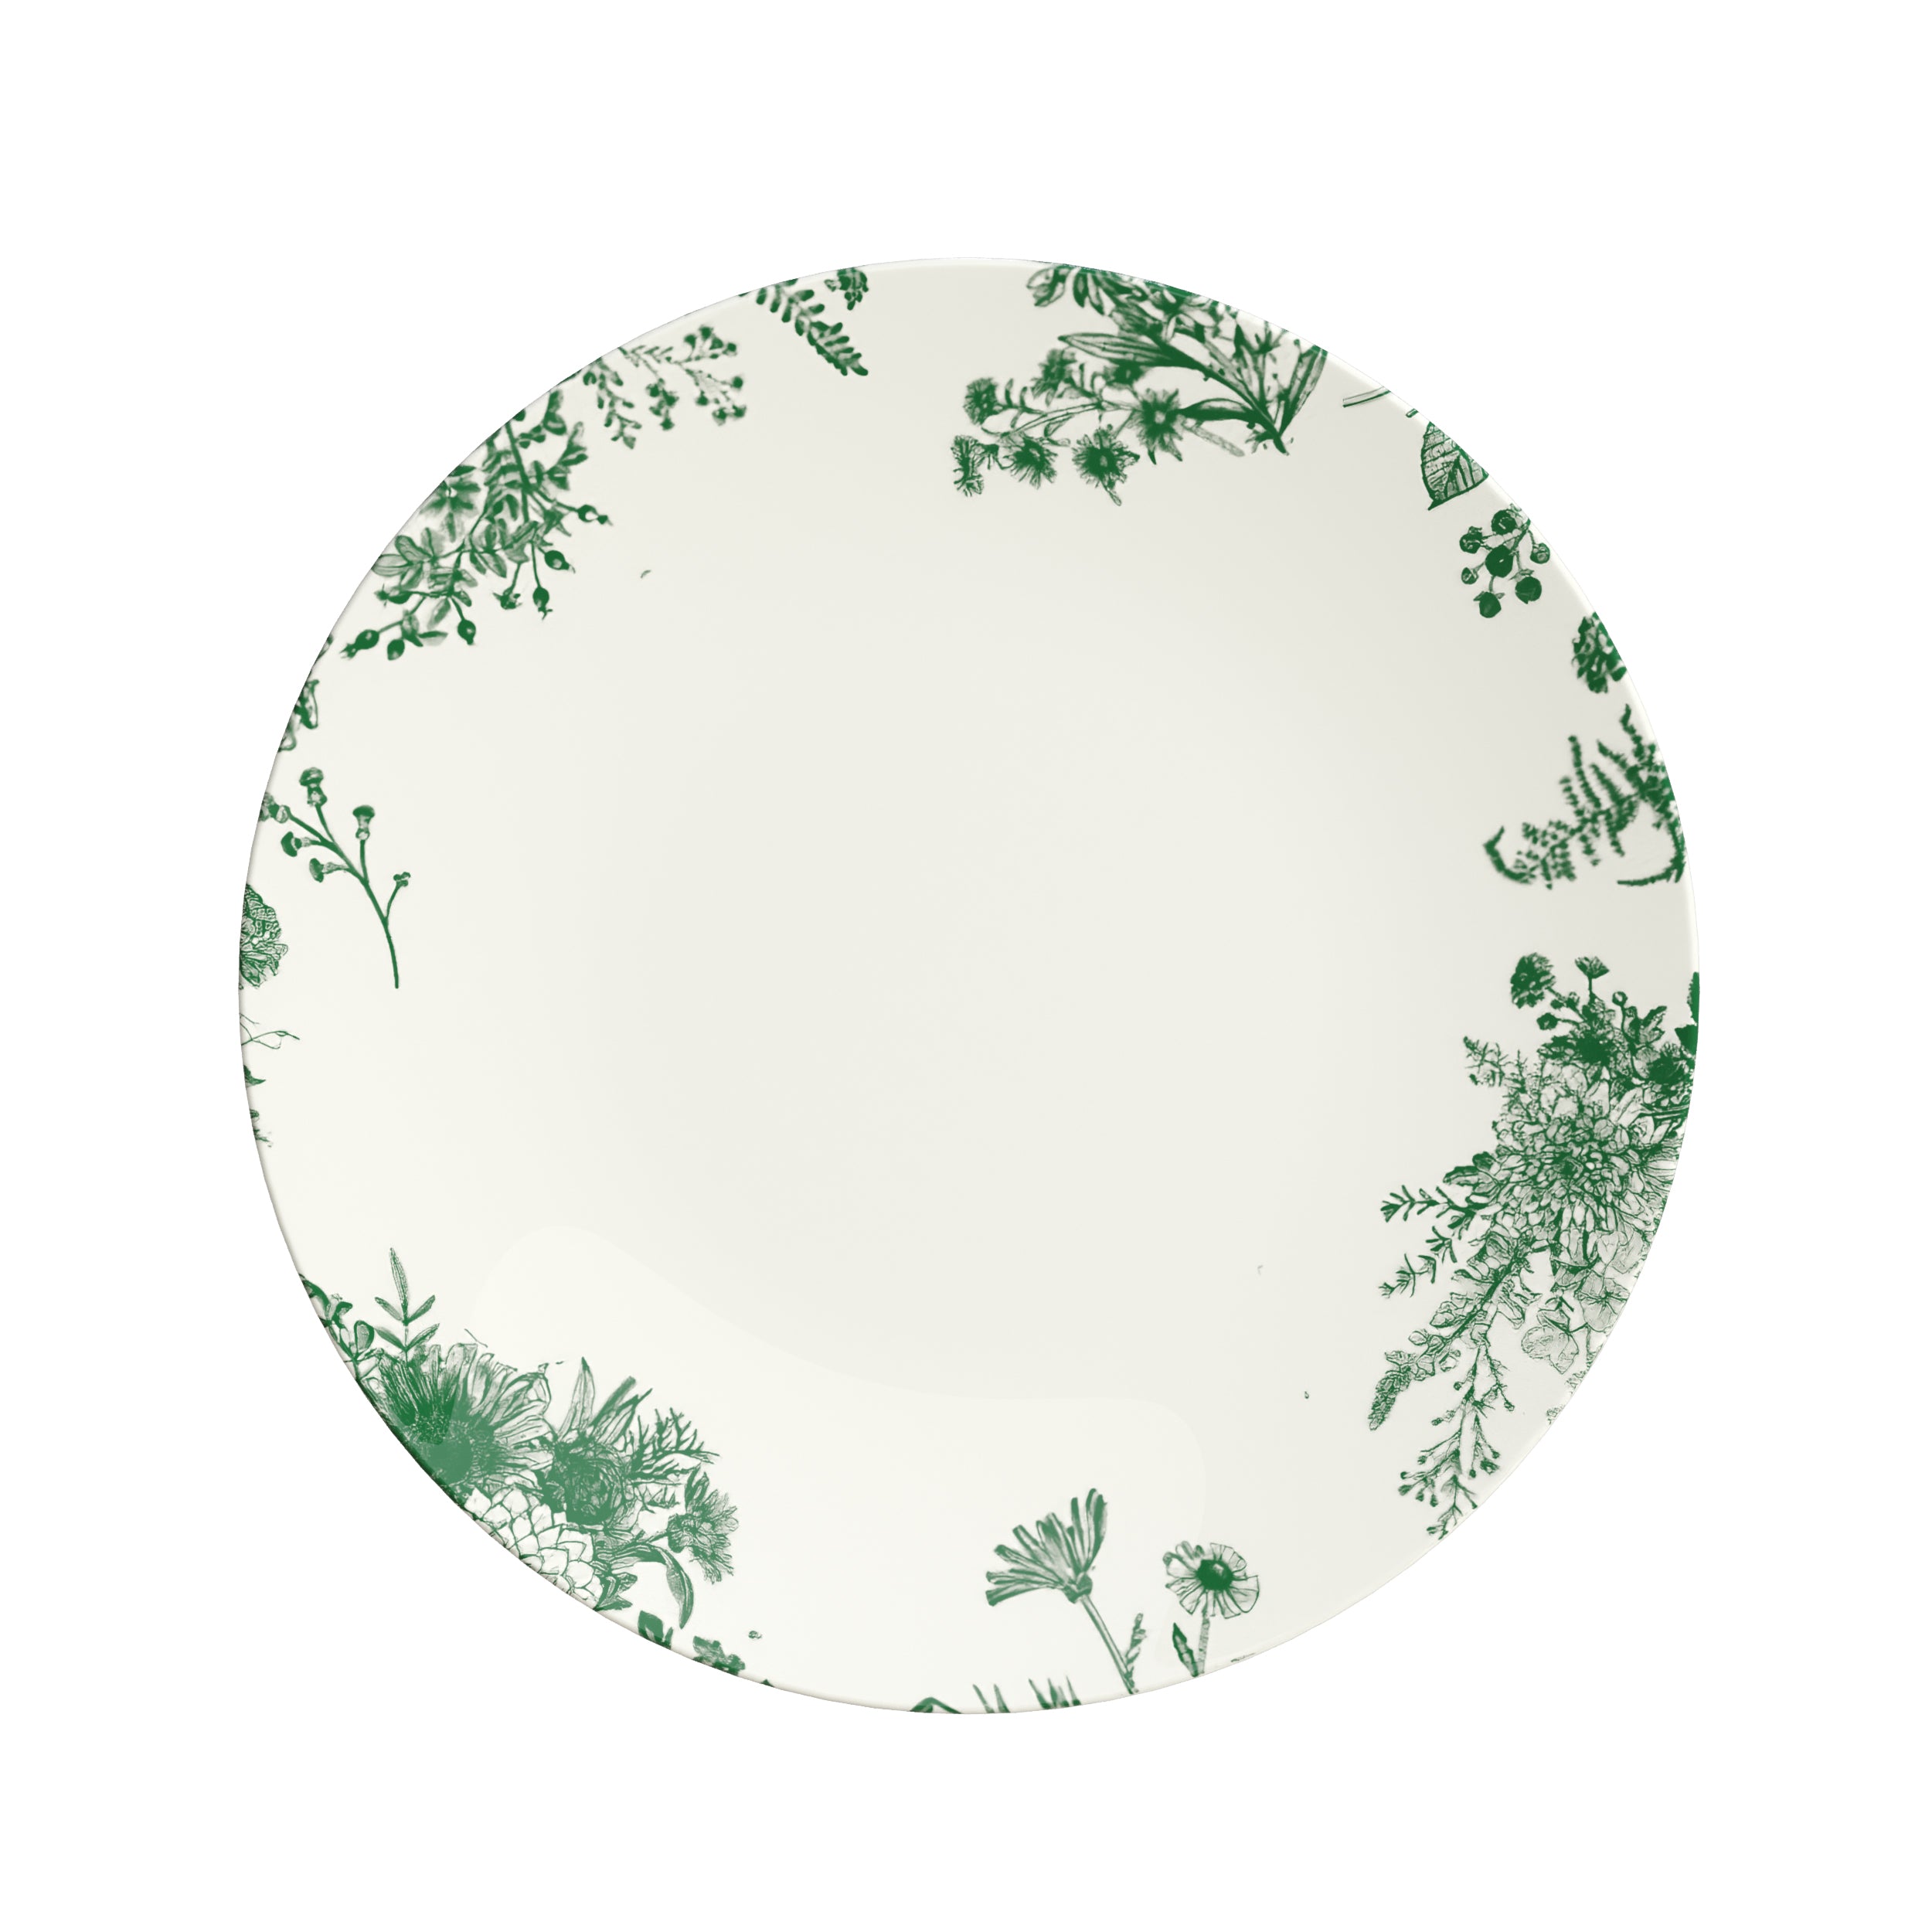 10 In. Verdure Design Plastic Plates | 10 Count